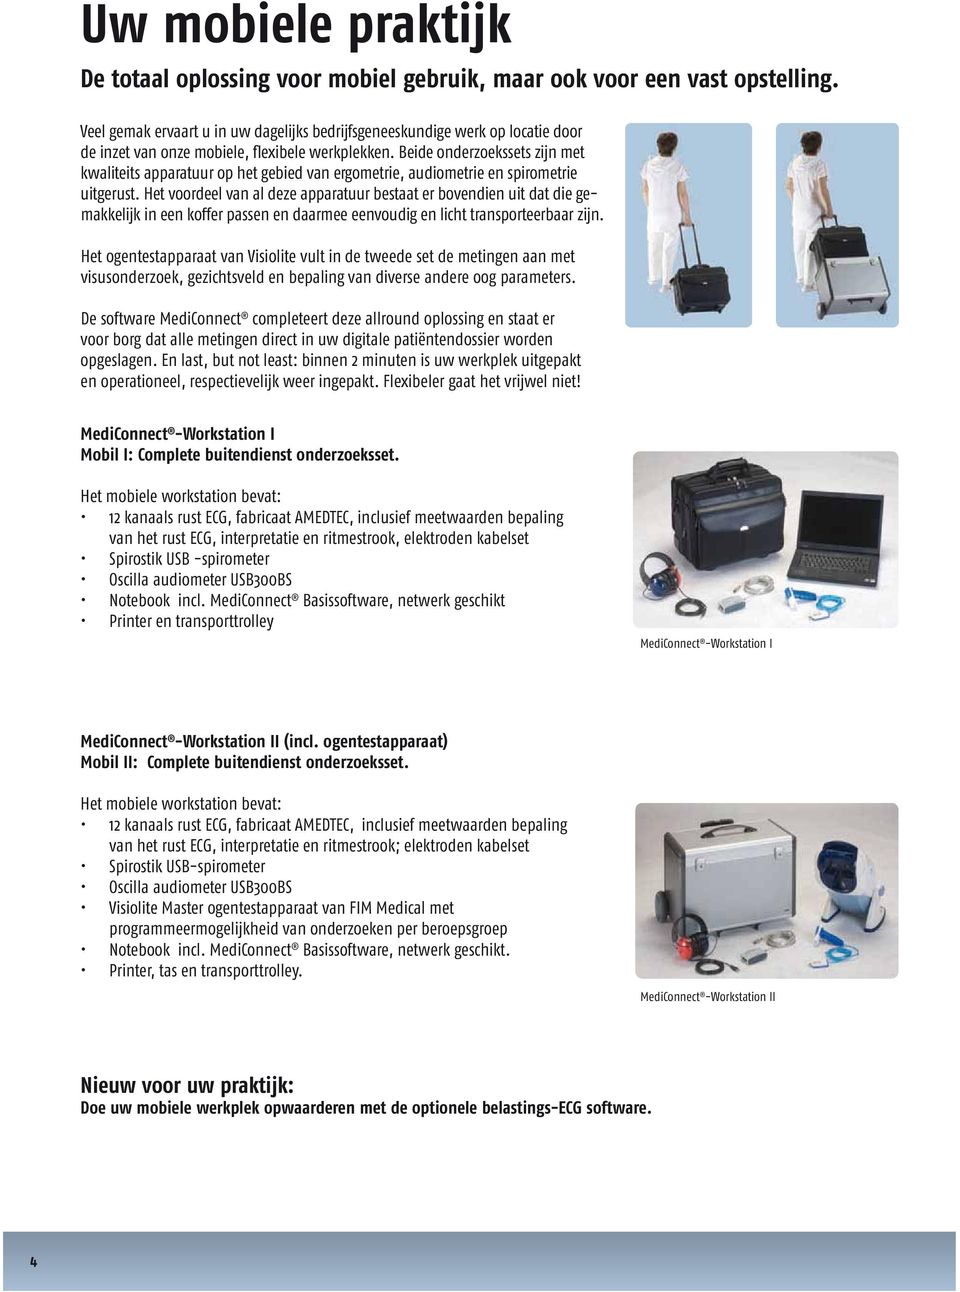 Beide onderzoekssets zijn met kwaliteits apparatuur op het gebied van ergometrie, audiometrie en spirometrie uitgerust.